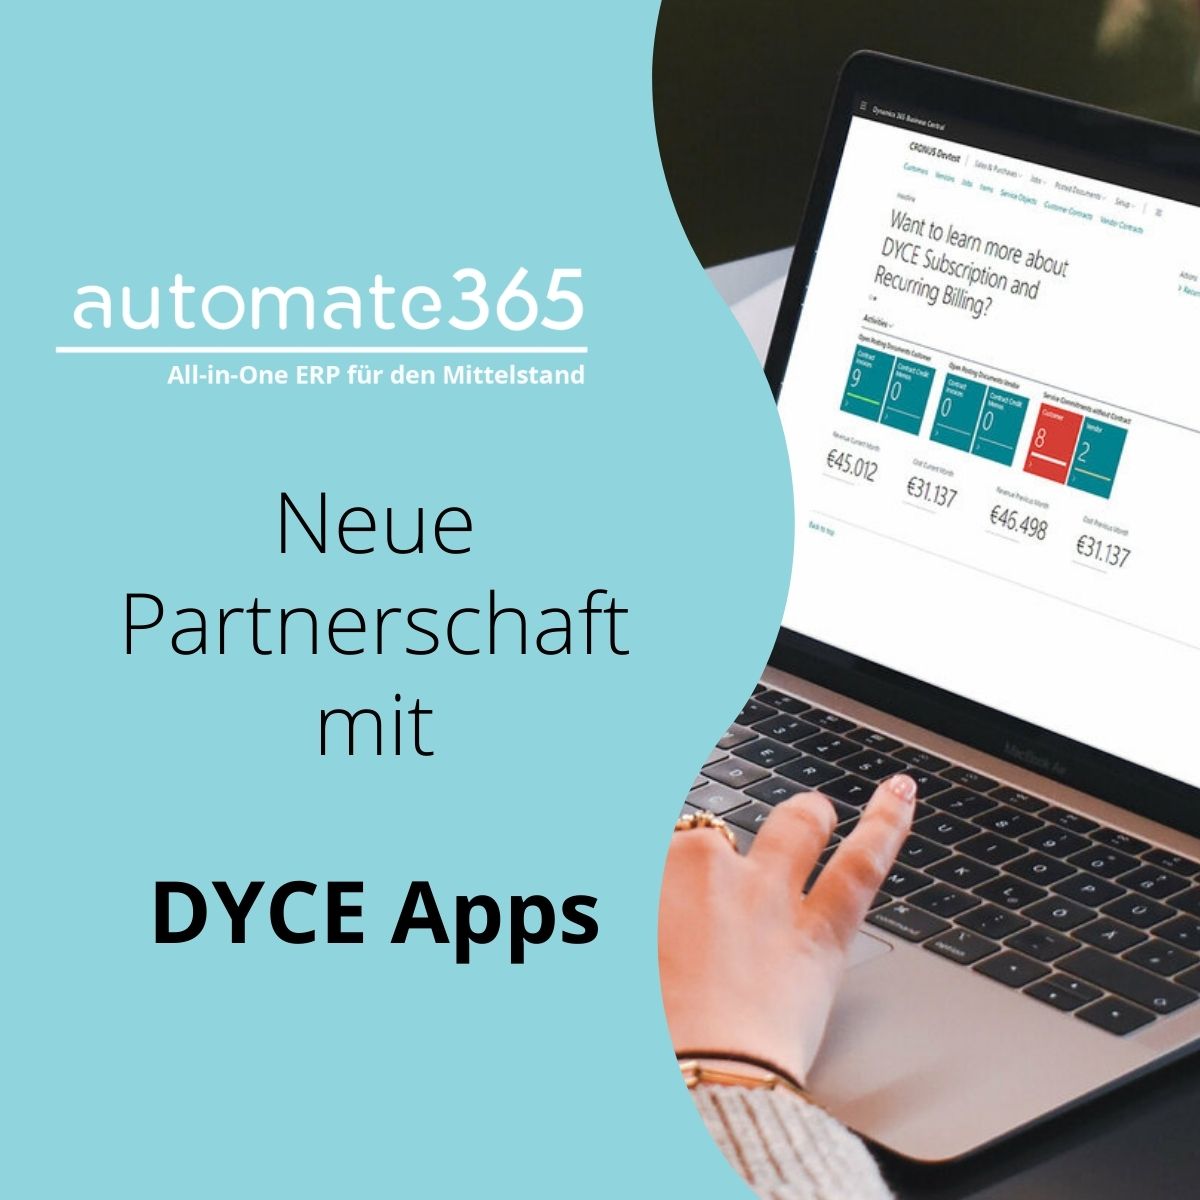 Dyce Apps – neue Partnerschaft